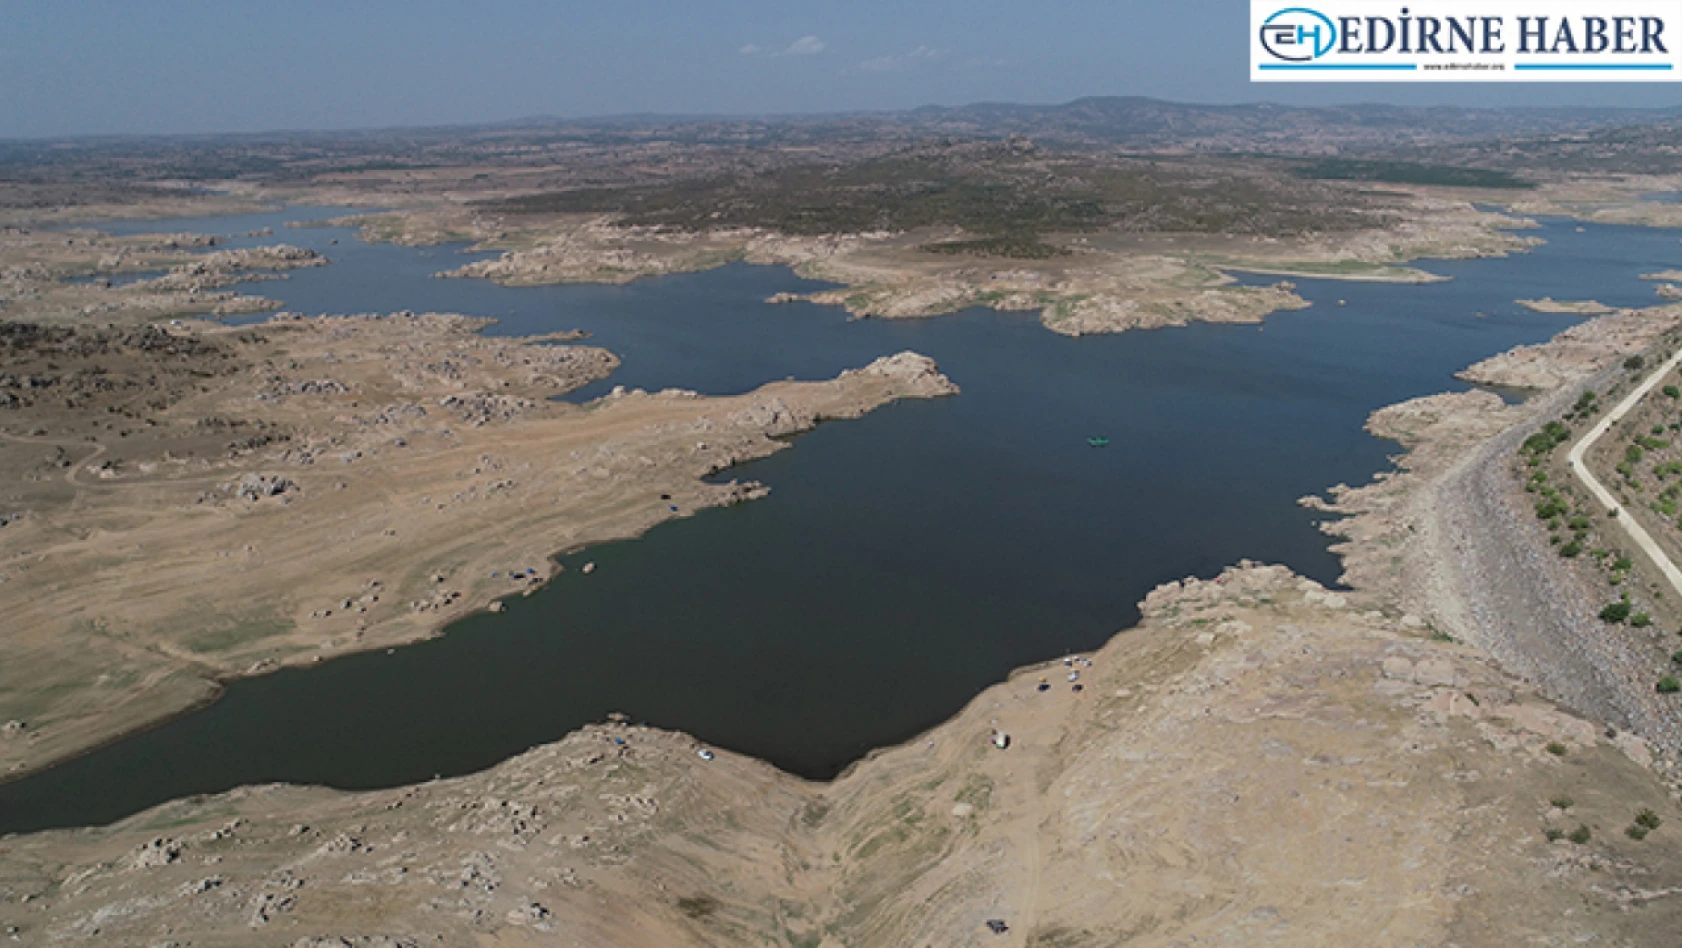 Edirne'de barajlar alarm veriyor! Şehrin içme suyu ihtiyacını karşılayan baraj dip seviyeye doğru gidiyor